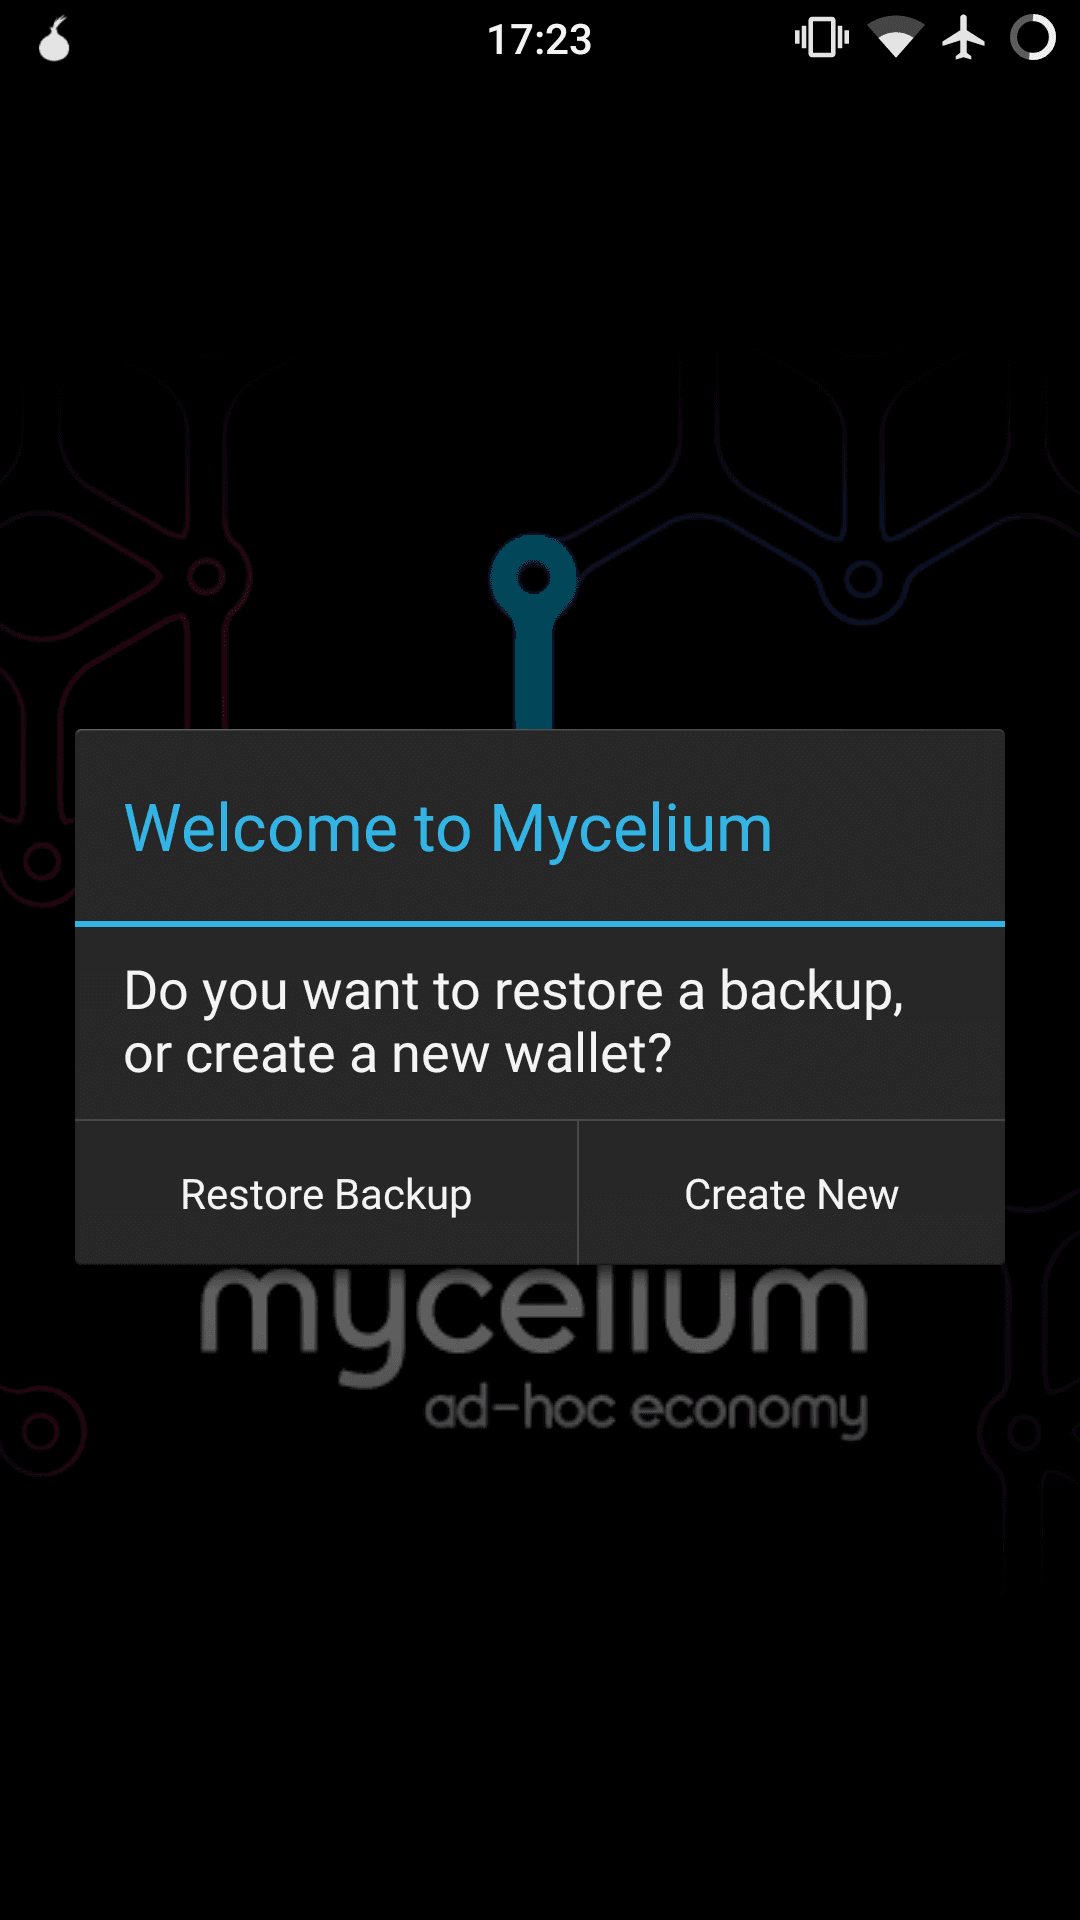 Welcome to Mycelium